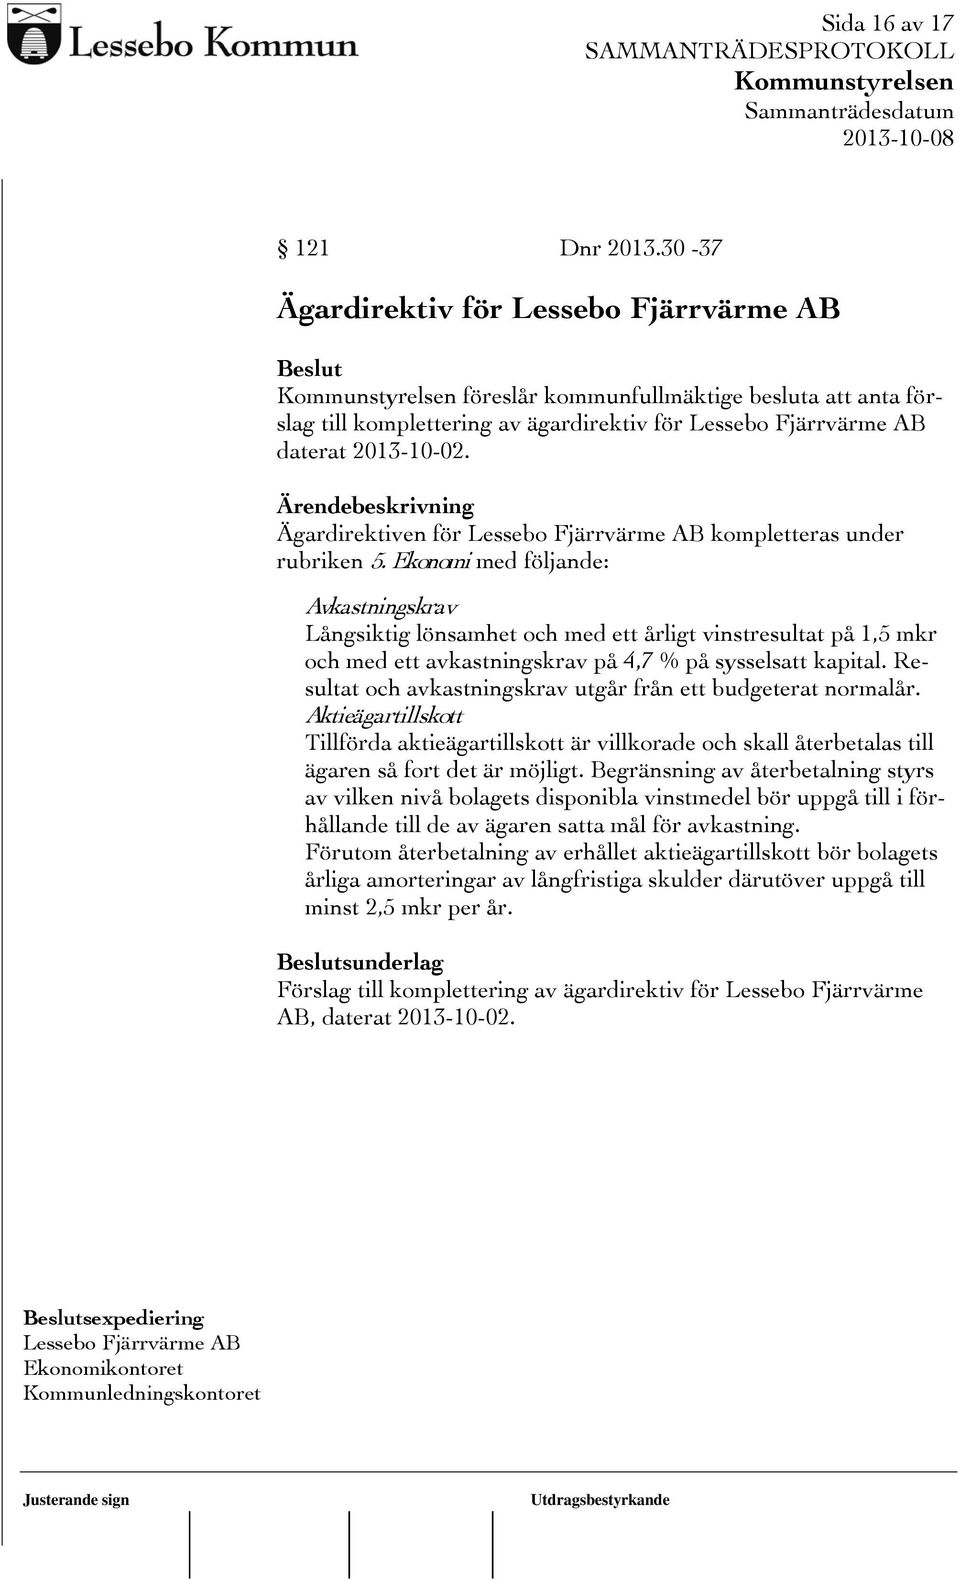 Ägardirektiven för Lessebo Fjärrvärme AB kompletteras under rubriken 5.